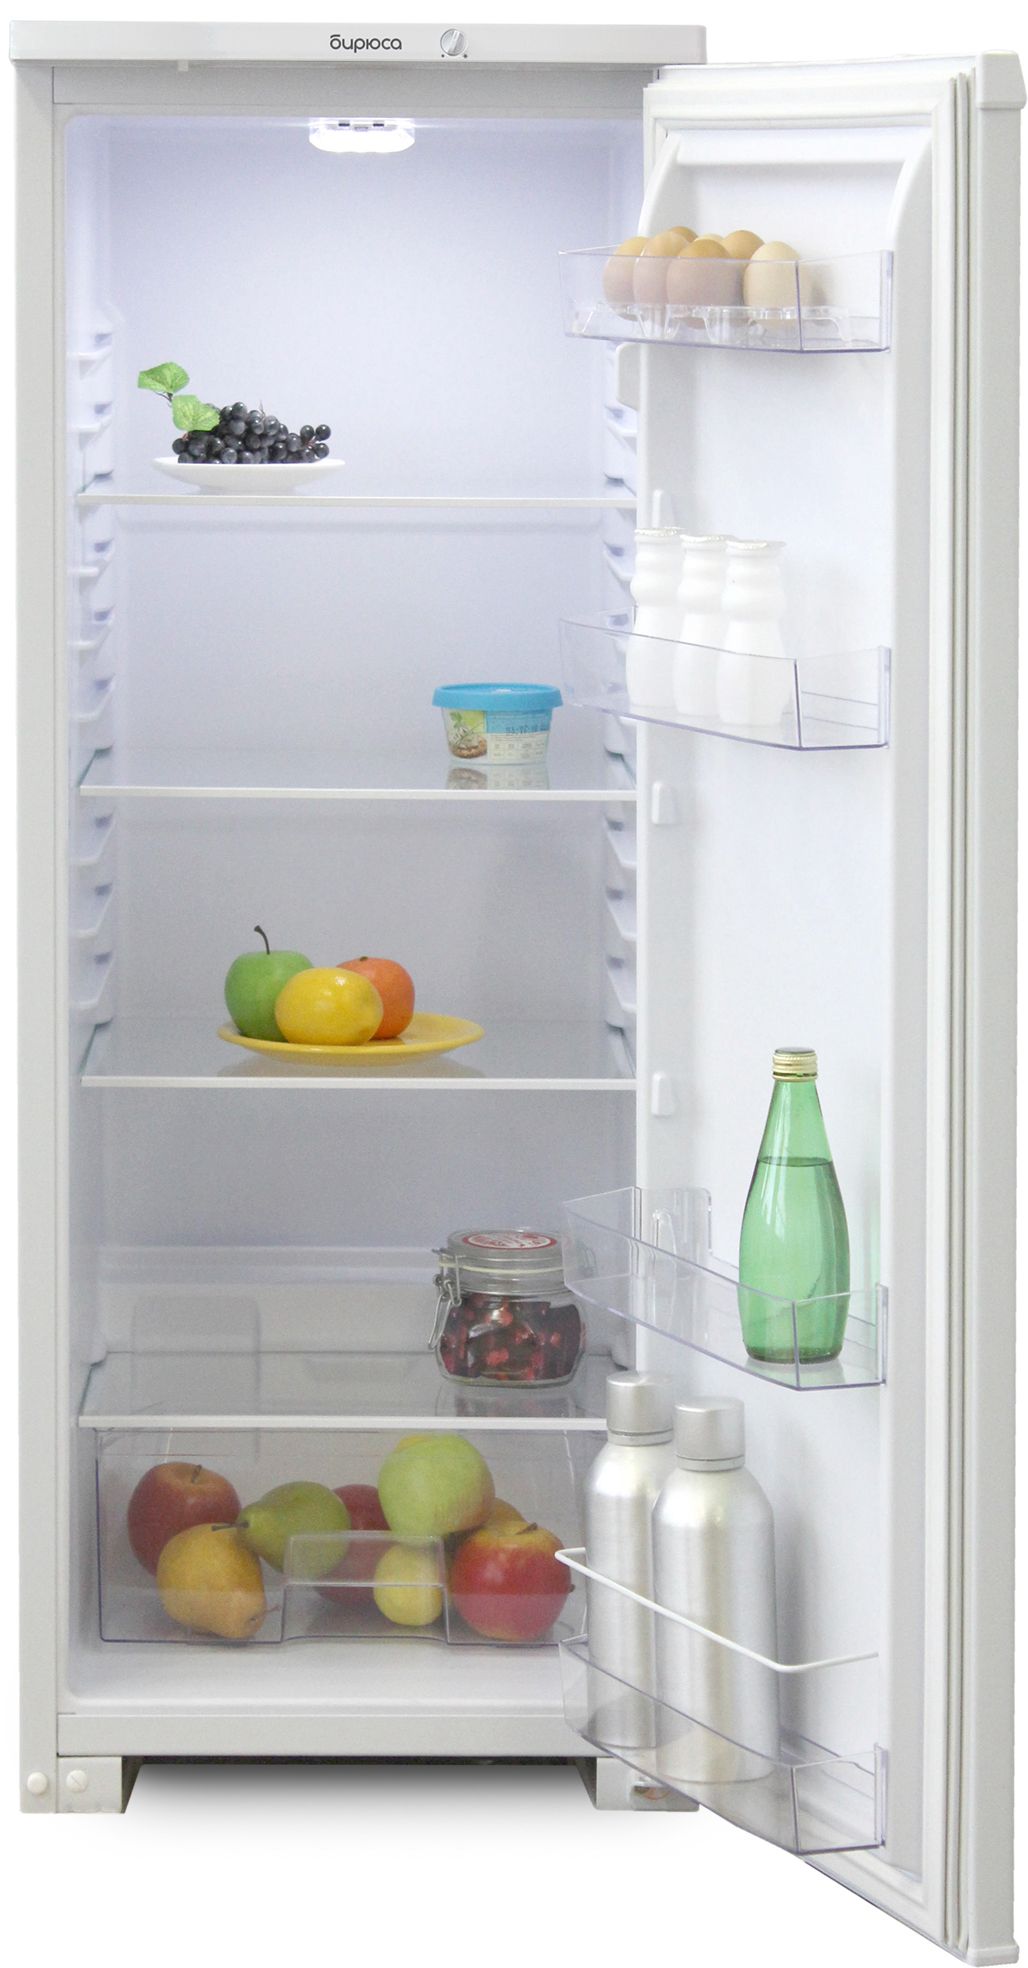 холодильник бирюса 111, купить в Красноярске холодильник бирюса 111,  купить в Красноярске дешево холодильник бирюса 111, купить в Красноярске минимальной цене холодильник бирюса 111